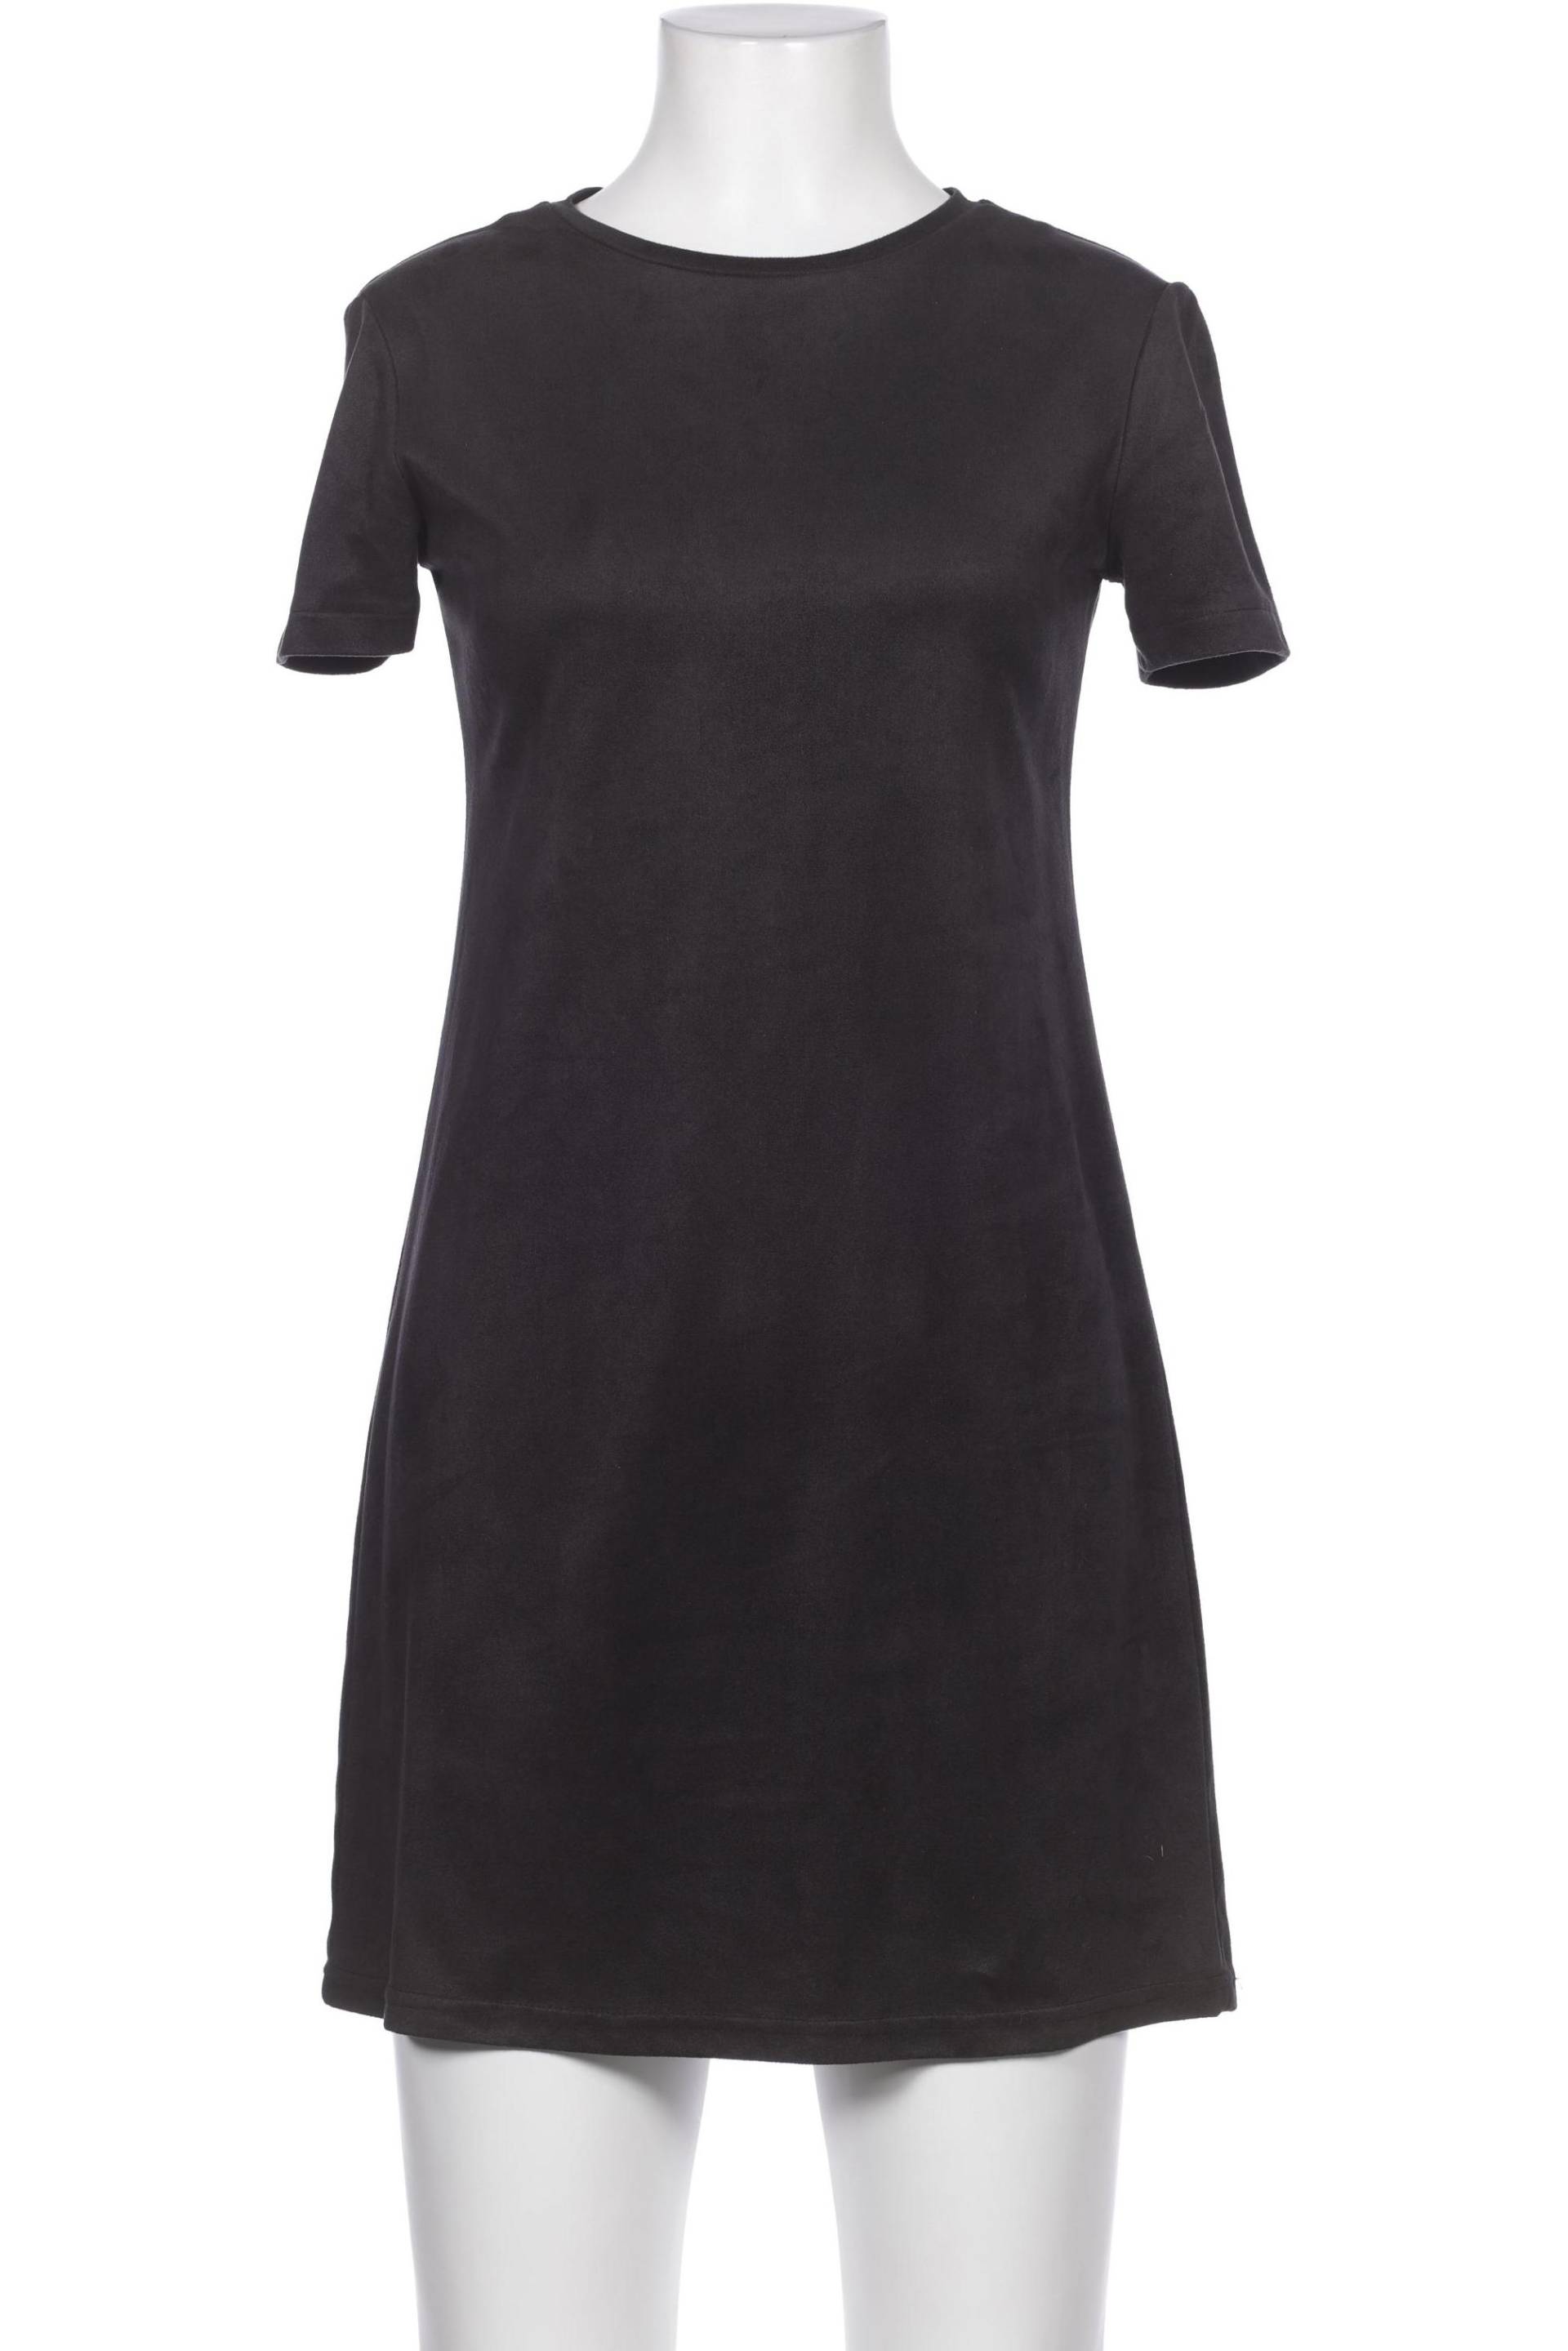 TRF by Zara Damen Kleid, schwarz, Gr. 36 von TRF by Zara